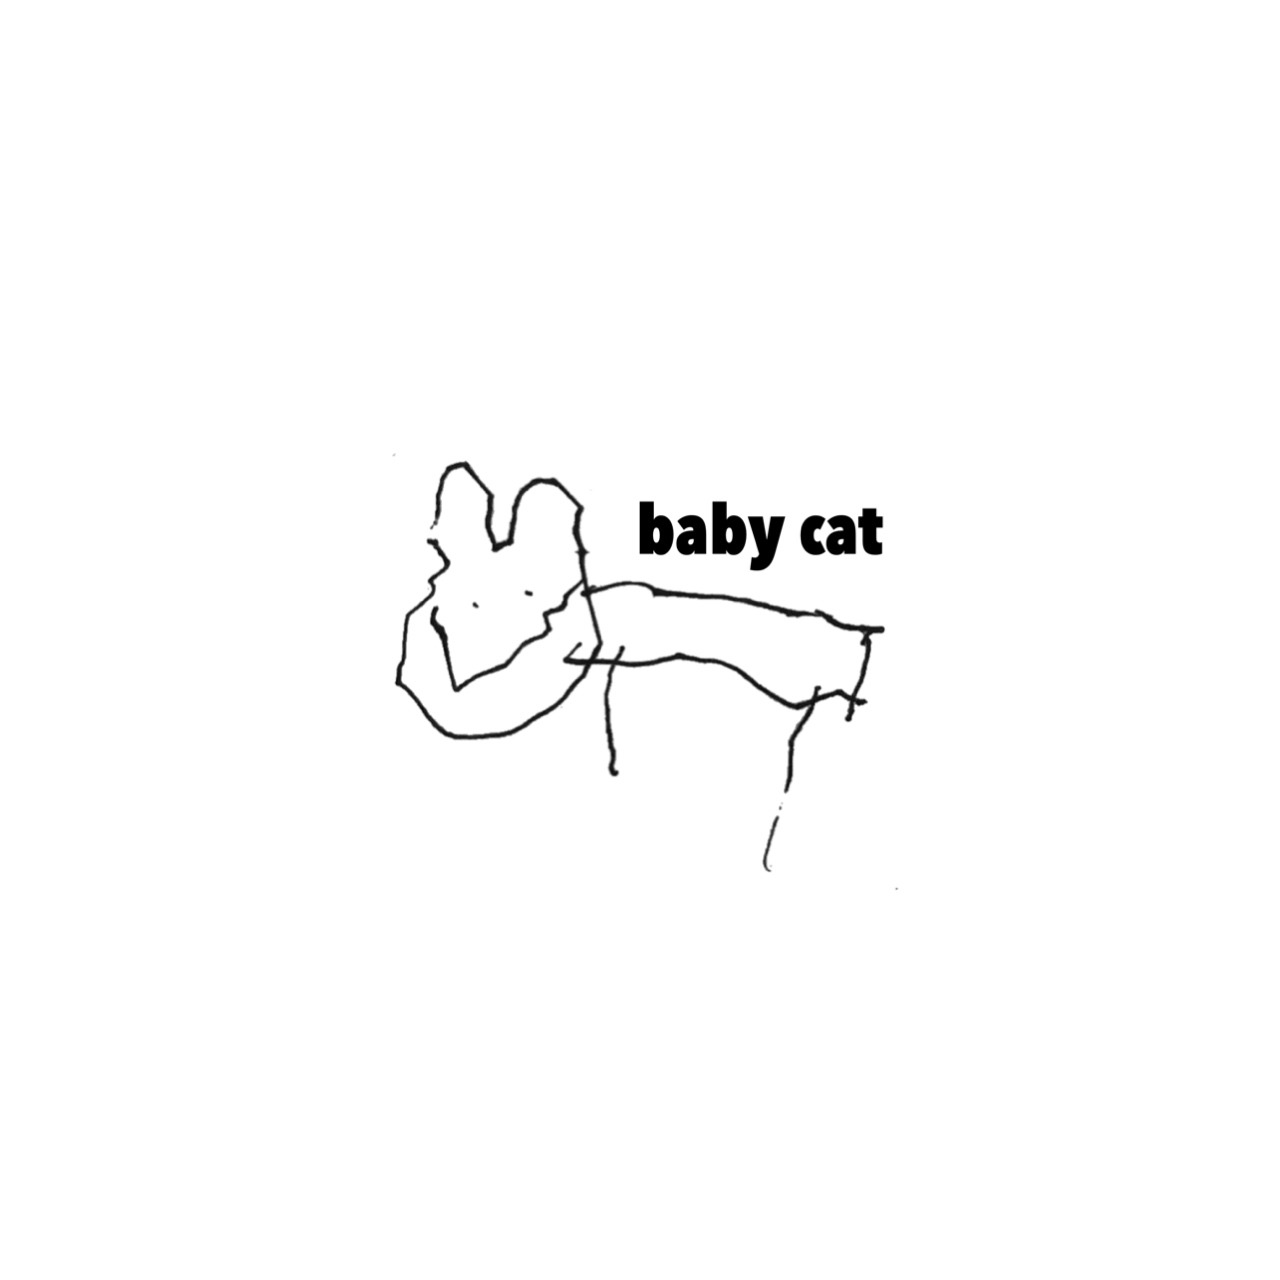 babycat